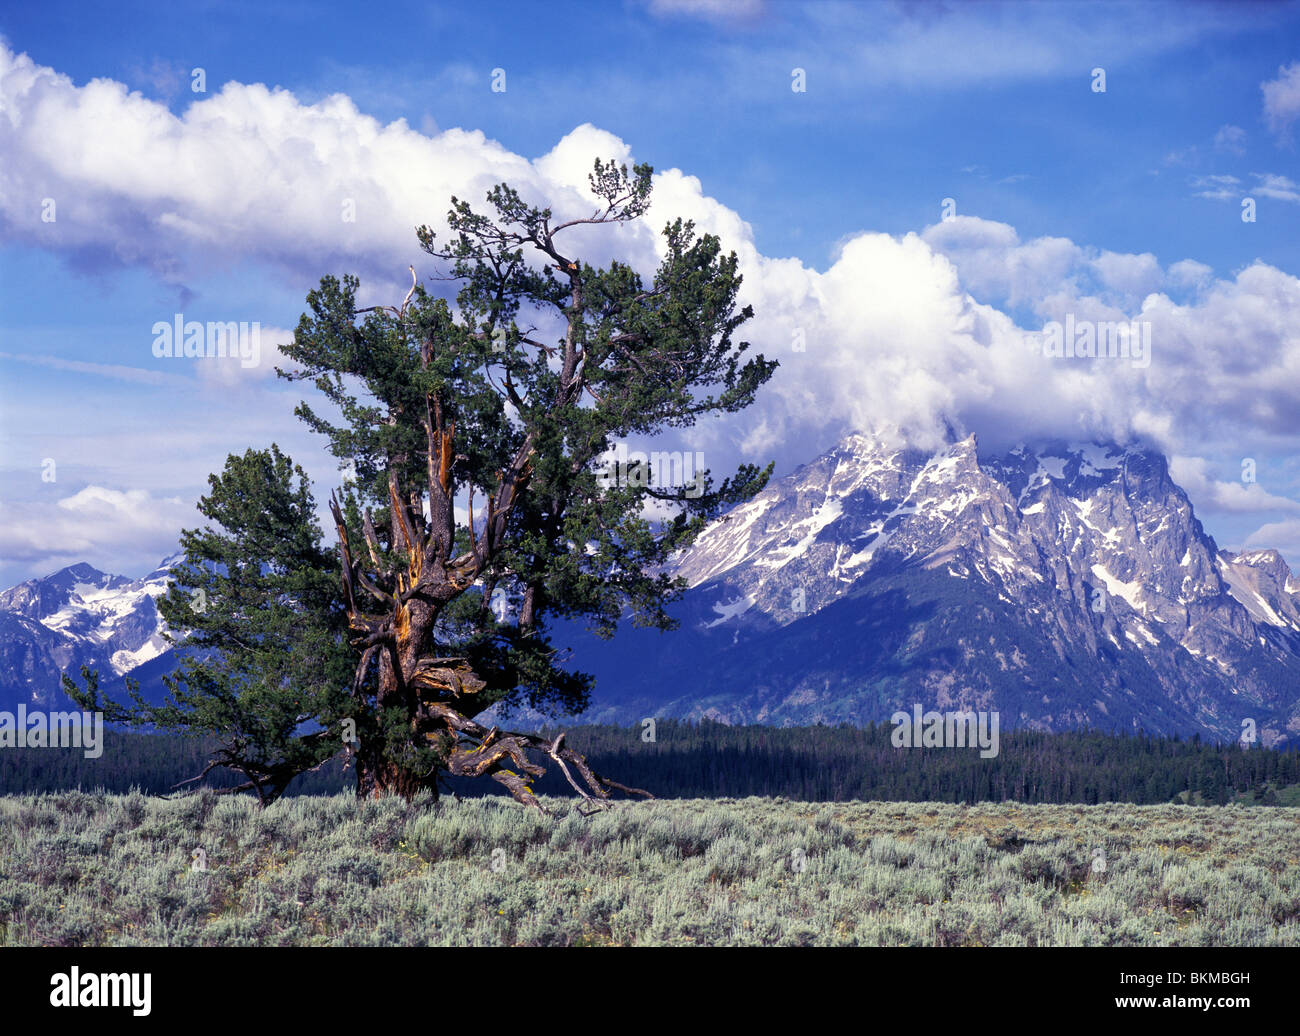 Old limber pine (Pinus flexilis) and the Grand Teton mountains, Grand Teton National Park, Wyoming, USA. Stock Photo